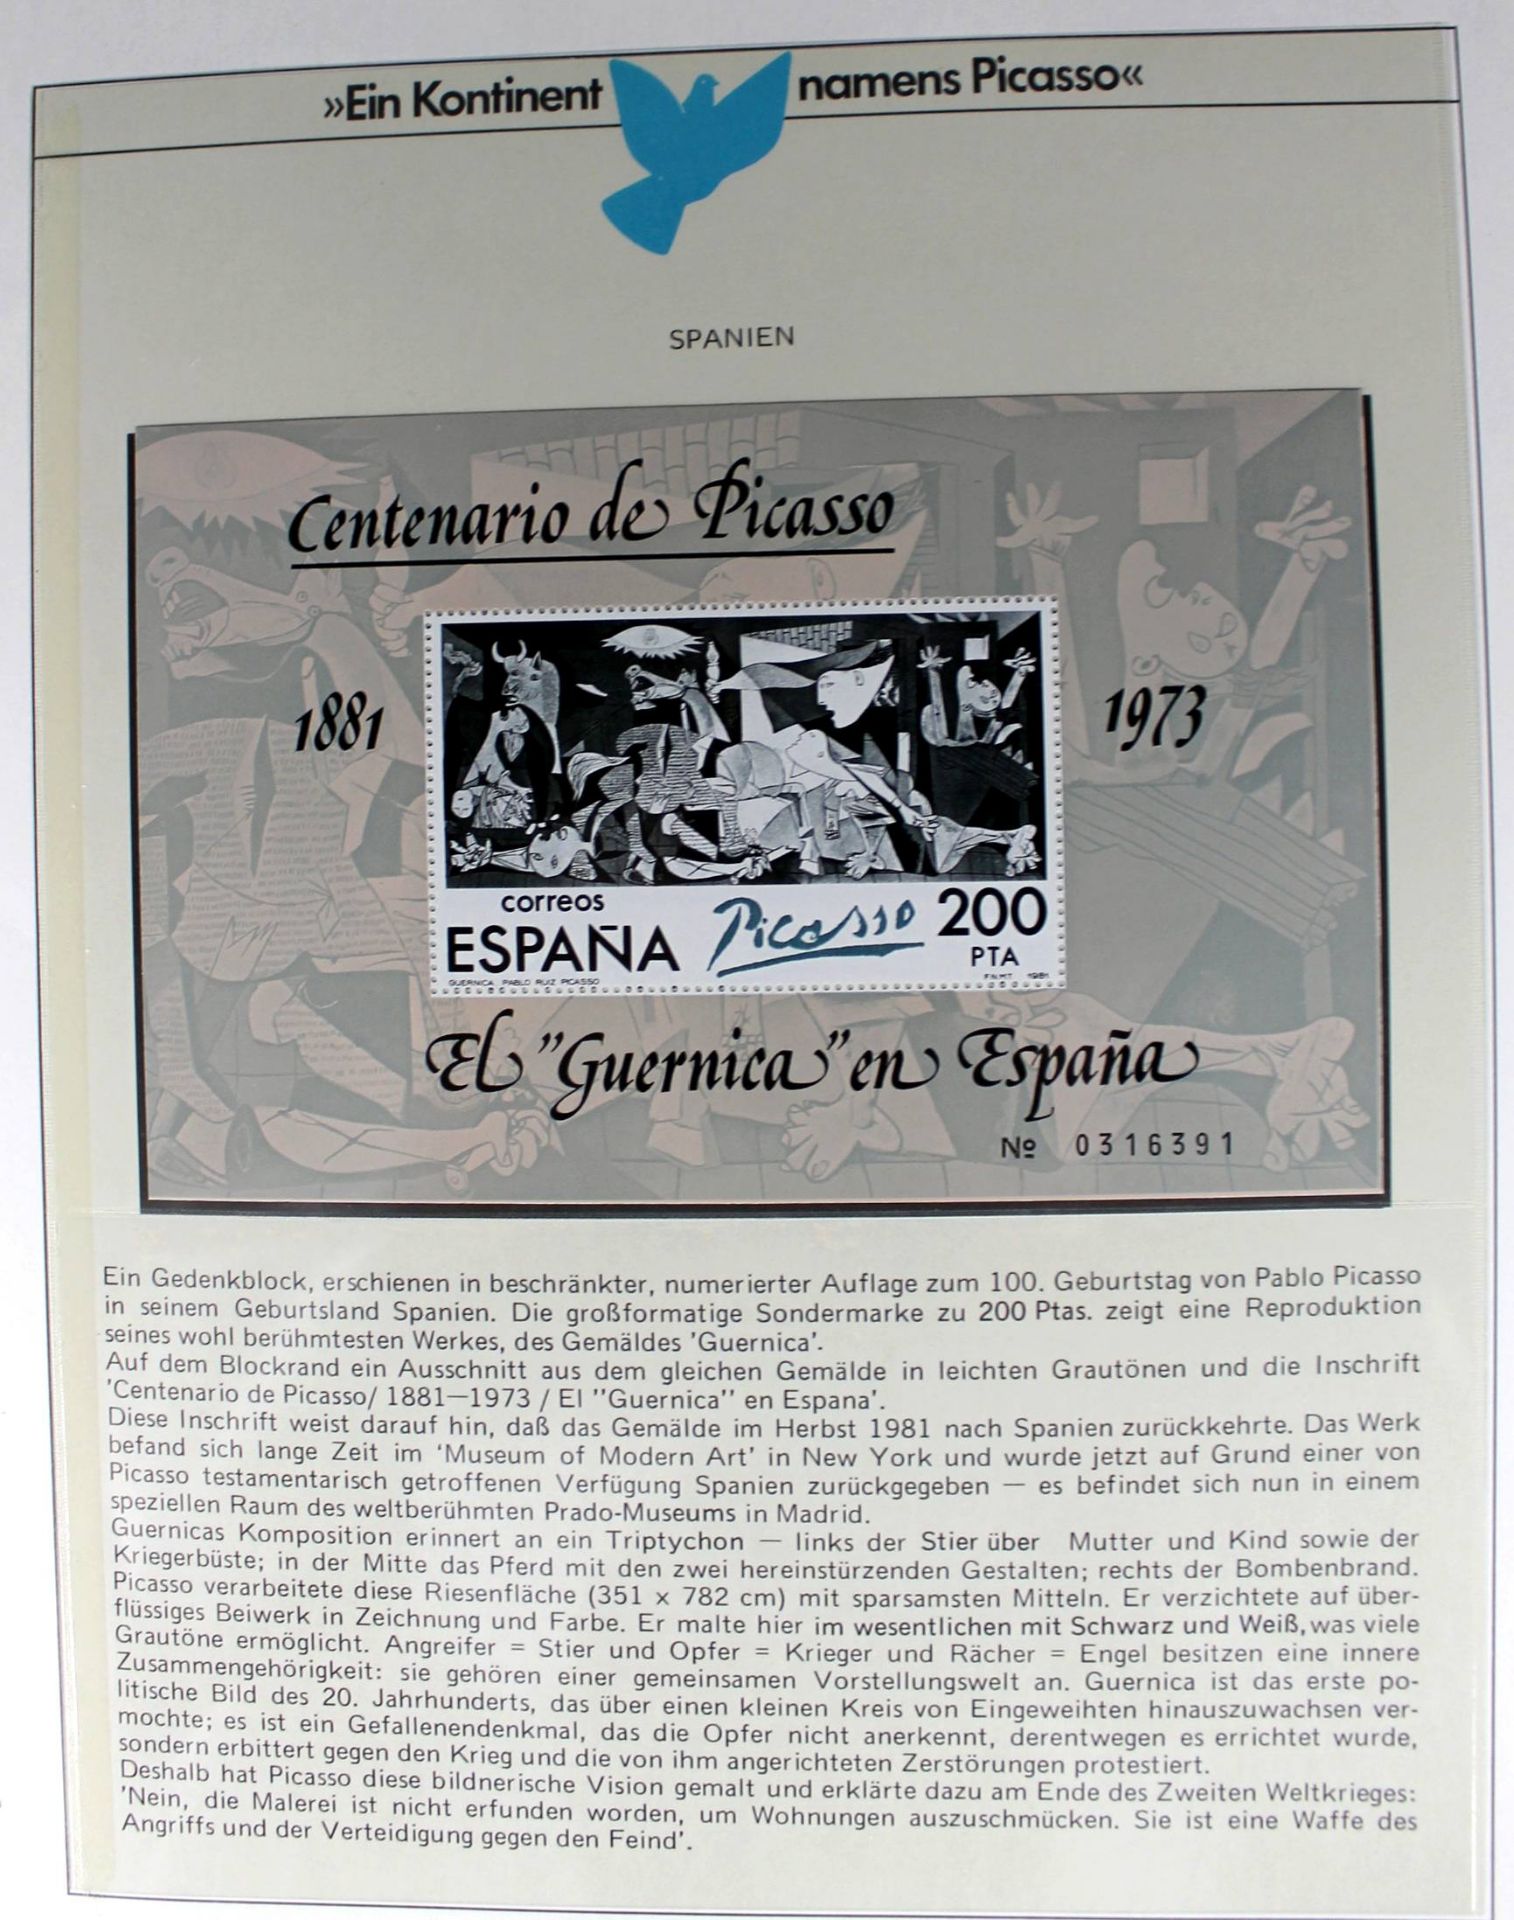 1 Sammlung (2 Alben) „Ein Kontinent Namens Picasso“, sehr hoher Einstandspreis - Image 2 of 5